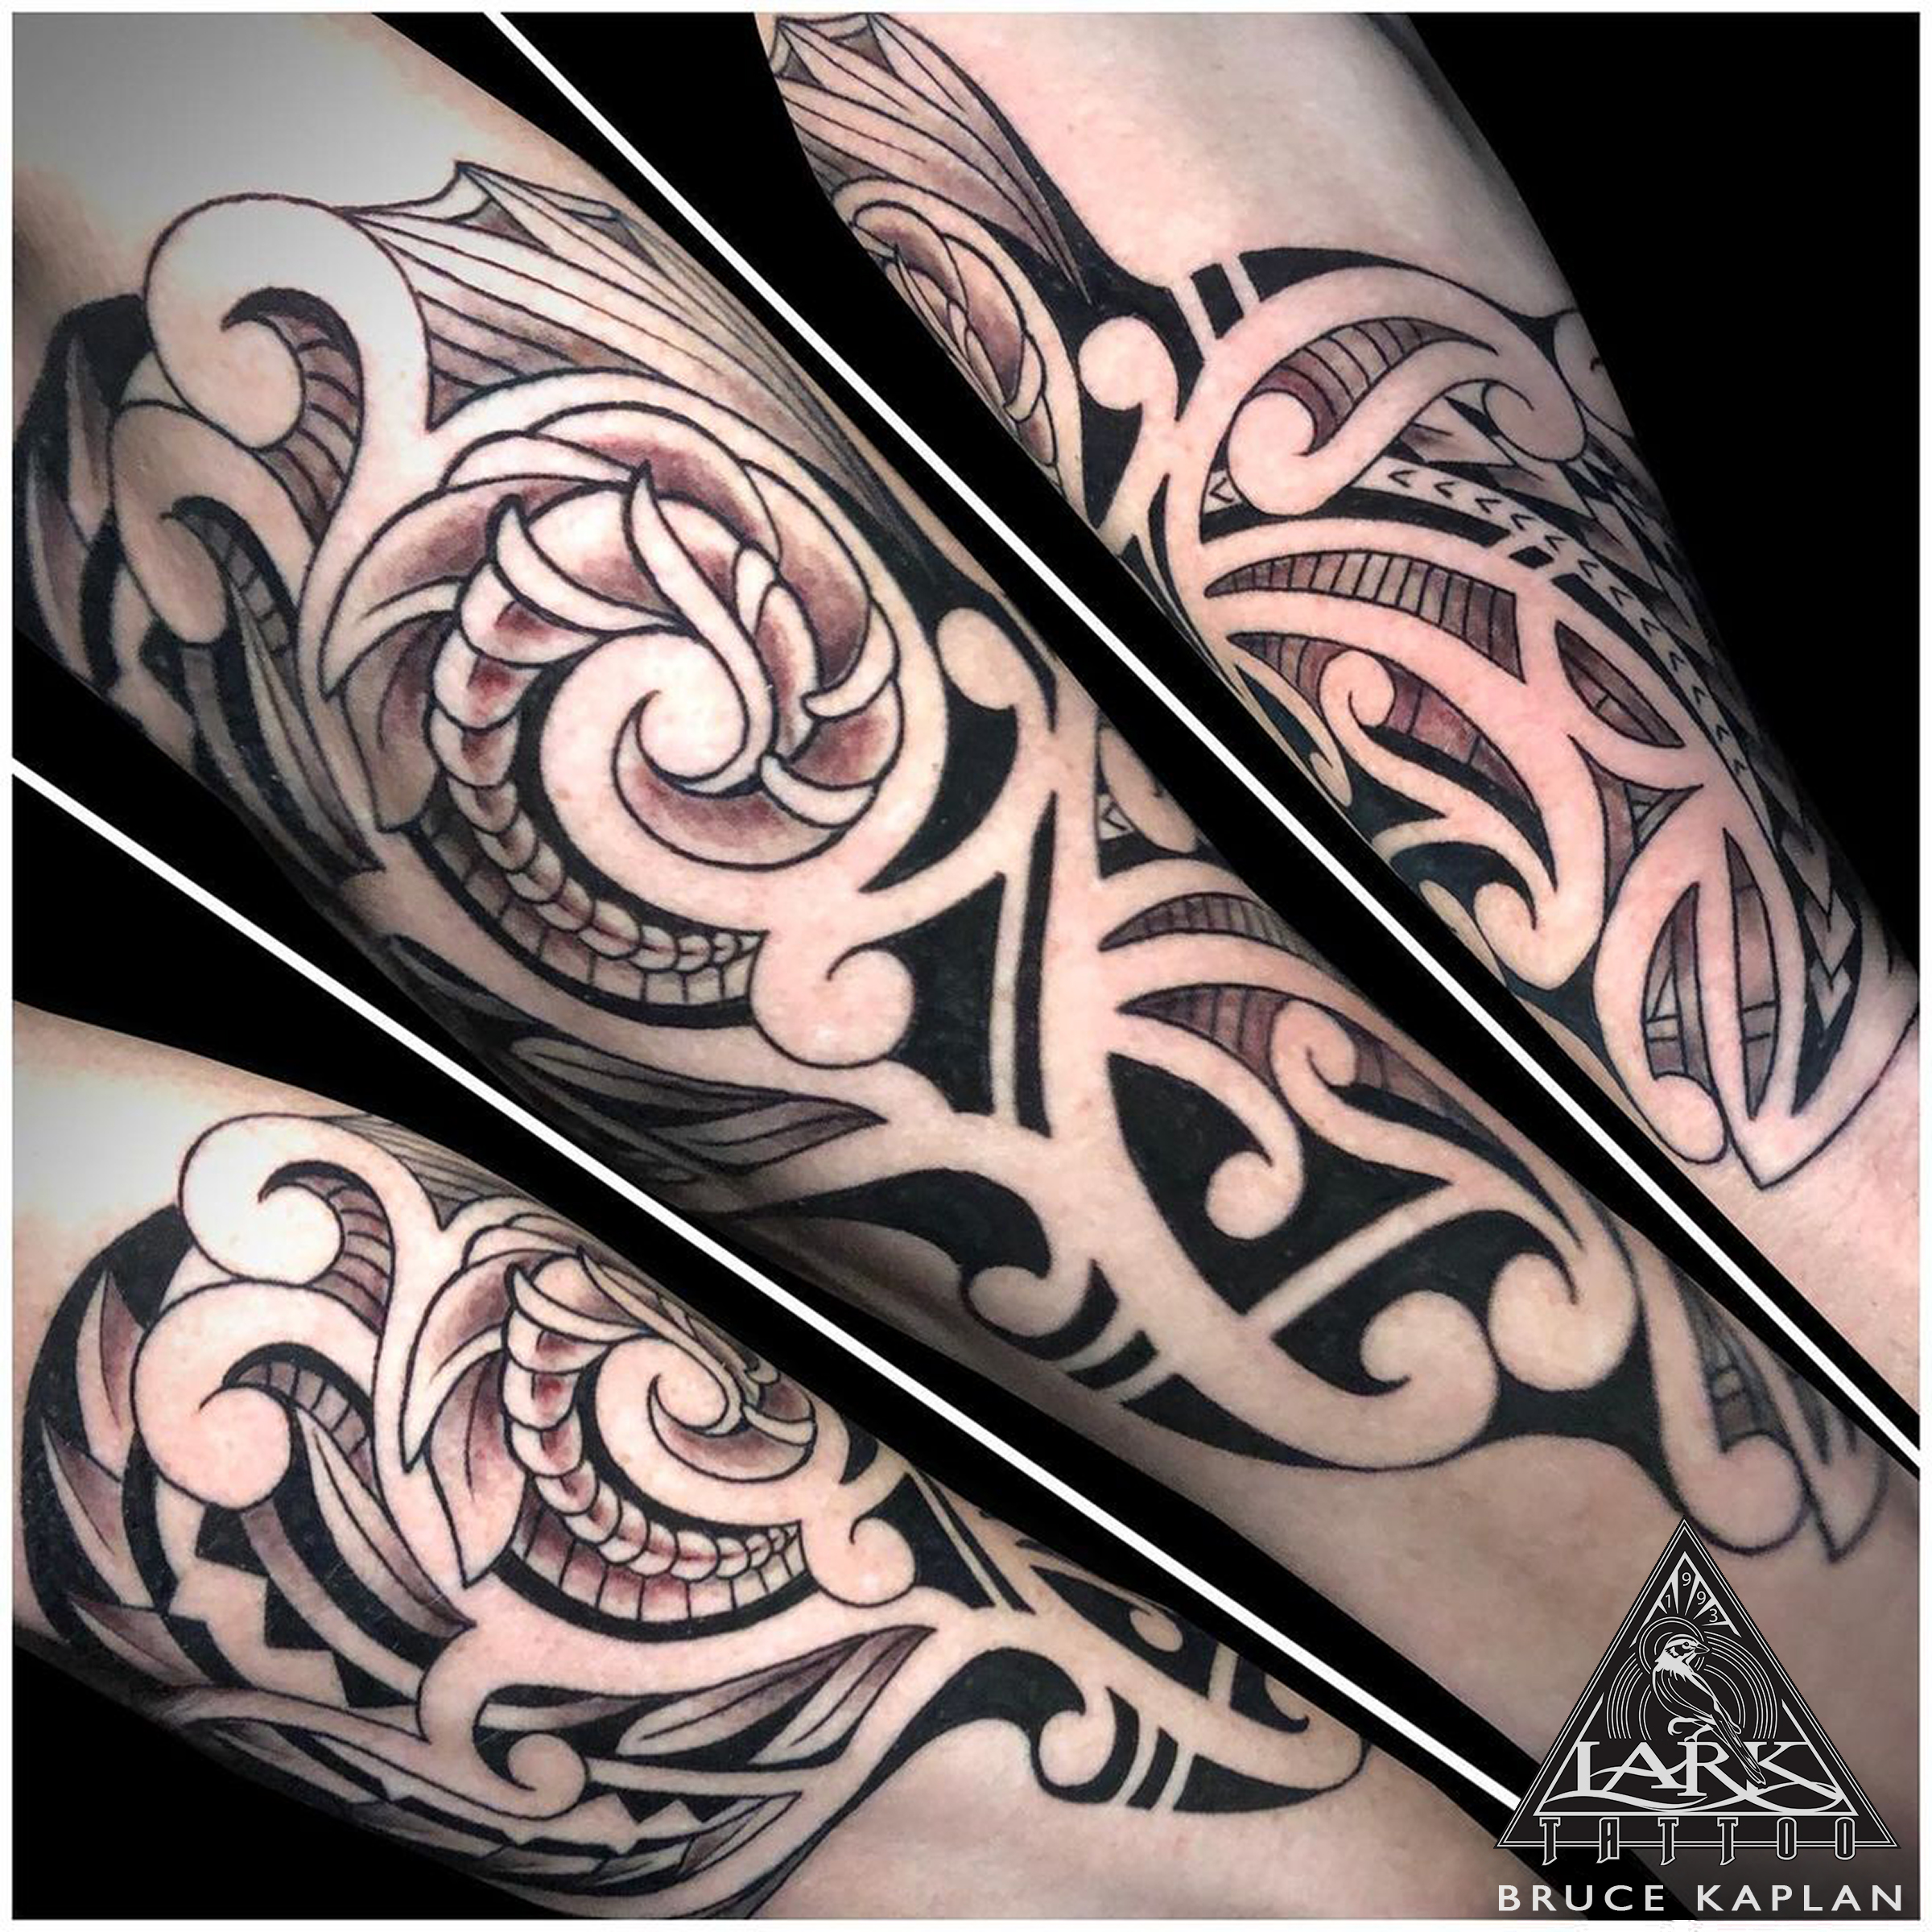 #LarkTattoo #BruceKaplan #BruceKaplanLarkTattoo #Tattoo #Tattoos #Tribal #TribalTattoo #Polynesian #PolynesianTattoo #ArmTattoo #ArmSleeve #Maori #MaoriTattoo #Samoan #SomoanTattoo #BlackAndGray #BlackAndGrayTattoo #BlackAndGrey #BlackAndGreyTattoo #BNG #BNGInkSociety #TattooArtist #Tattoist #Tattooer #LongIslandTattooArtist #LongIslandTattooer #LongIslandTattoo #TattooOfTheDay #Tat #Tats #Tatts #Tatted #Inked #Ink #TattooInk #AmazingInk #AmazingTattoo #BodyArt #LarkTattooWestbury #Westbury #LongIsland #NY #NewYork #USA #Art #Tattedup #InkedUp #LarkTattoos